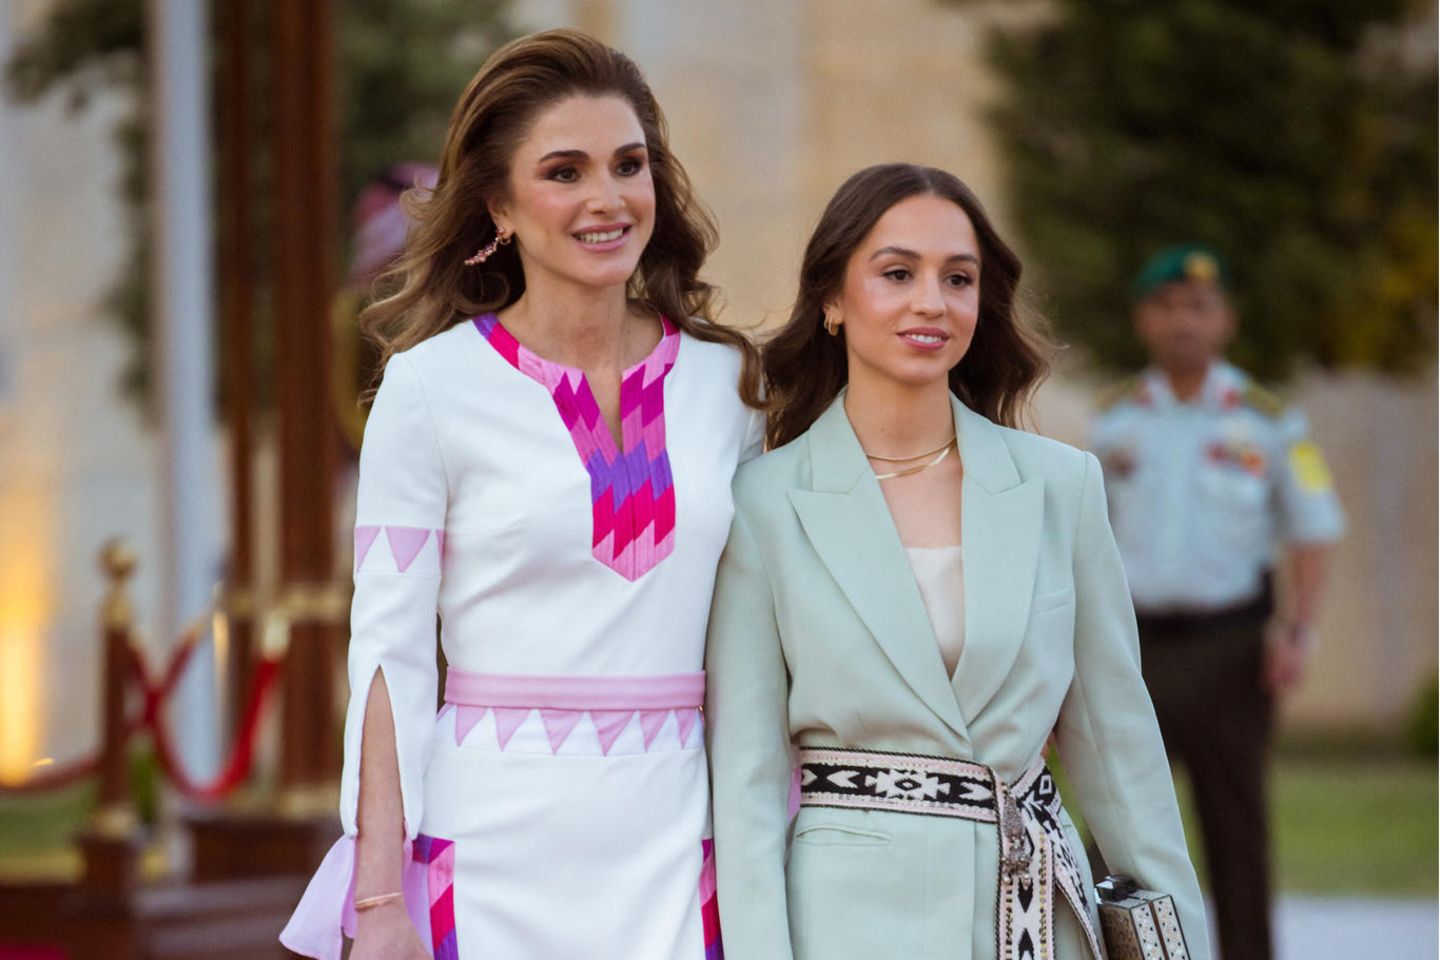 Königin Rania mit ihrer Tochter Prinzessin Iman bint Abdallah 